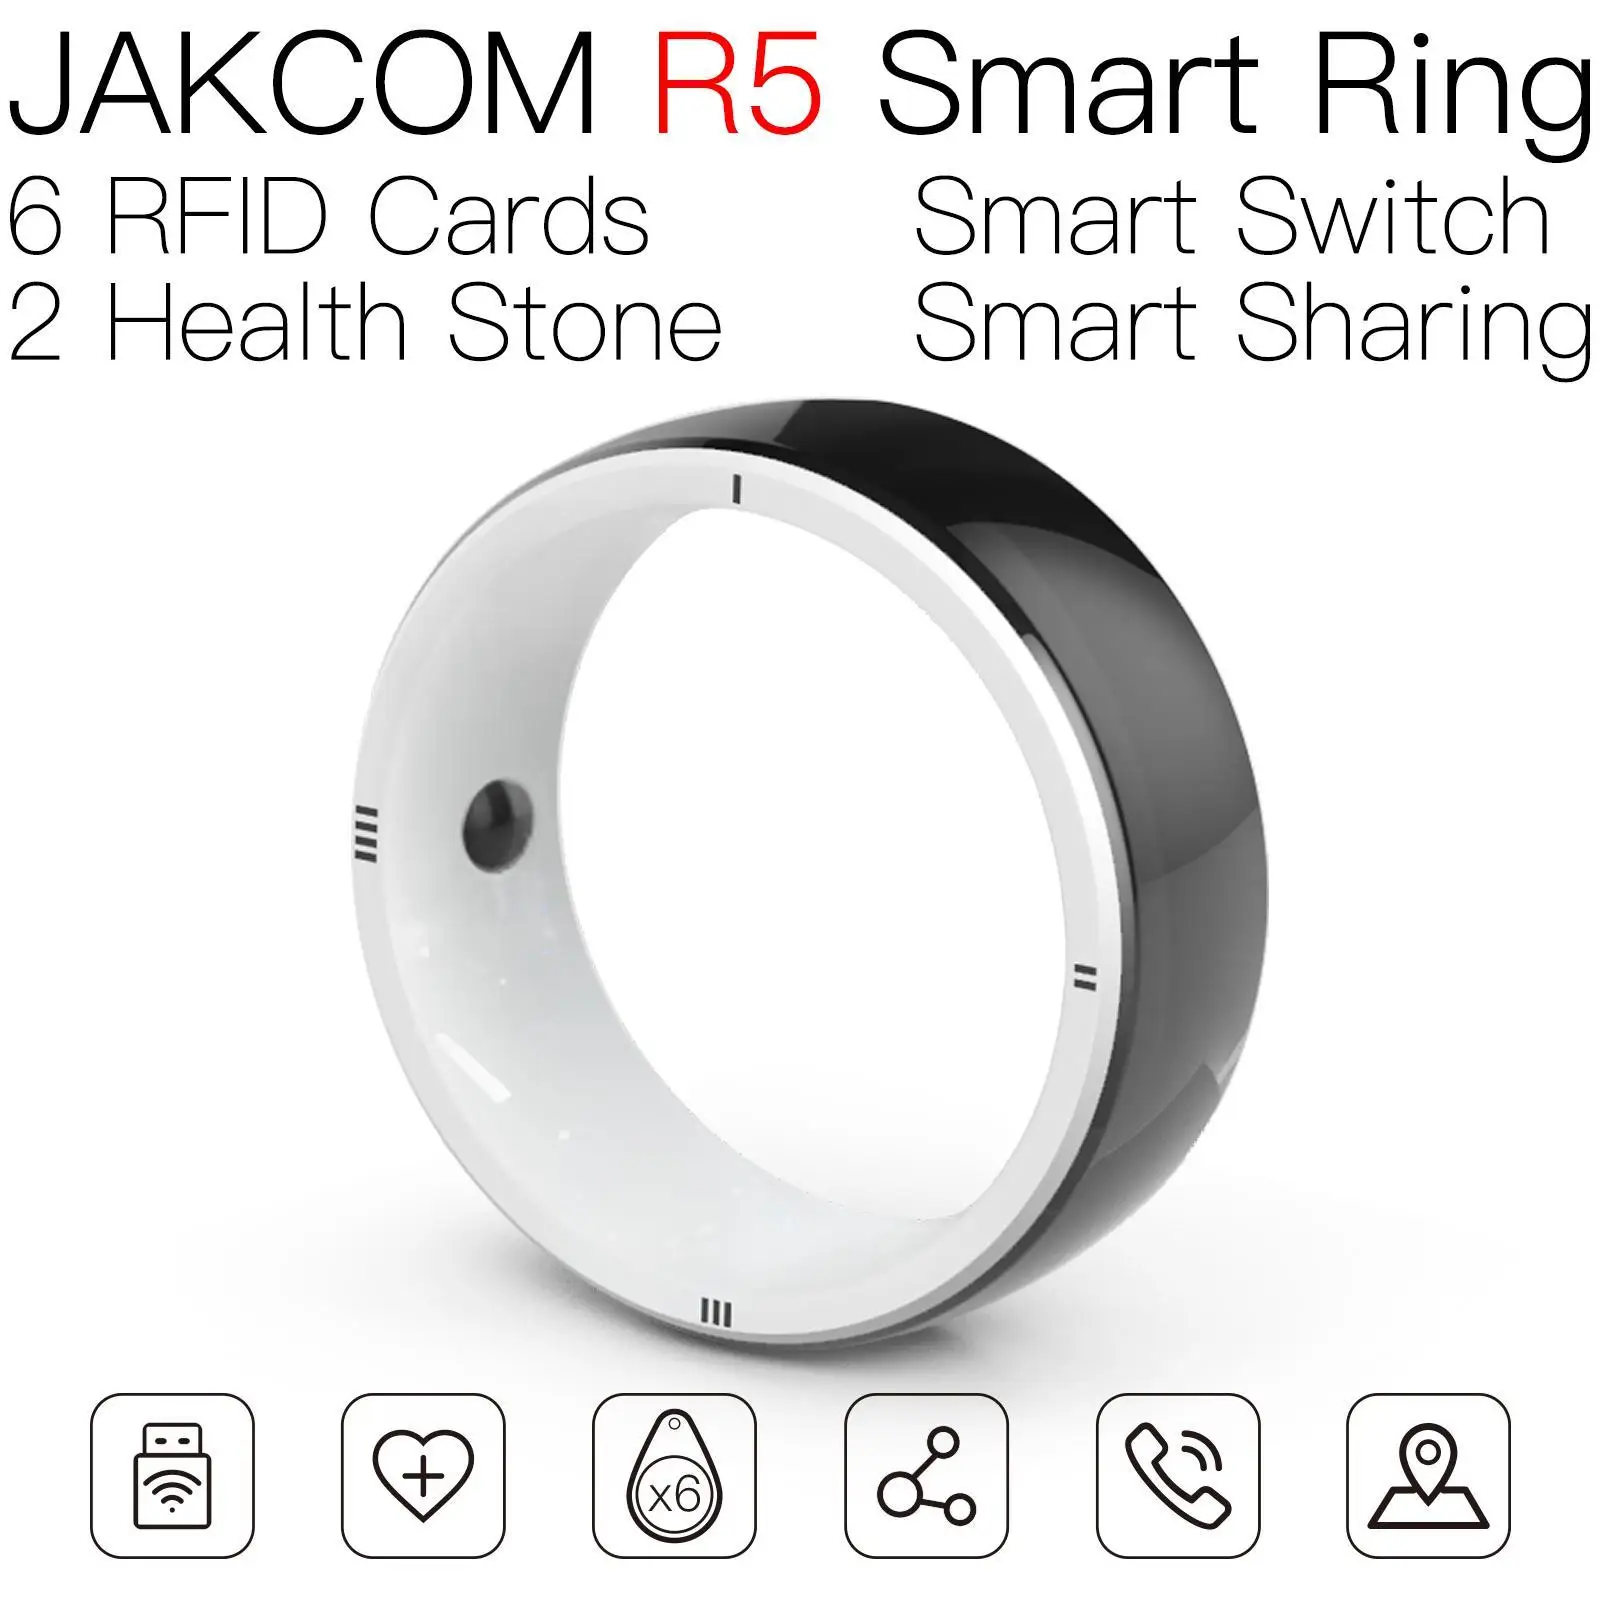 

Умное кольцо JAKCOM R5, лучший подарок с новыми умными продуктами, rfid-метка, считыватель, цветное prime видео, 1 год, площадь Нидерландов